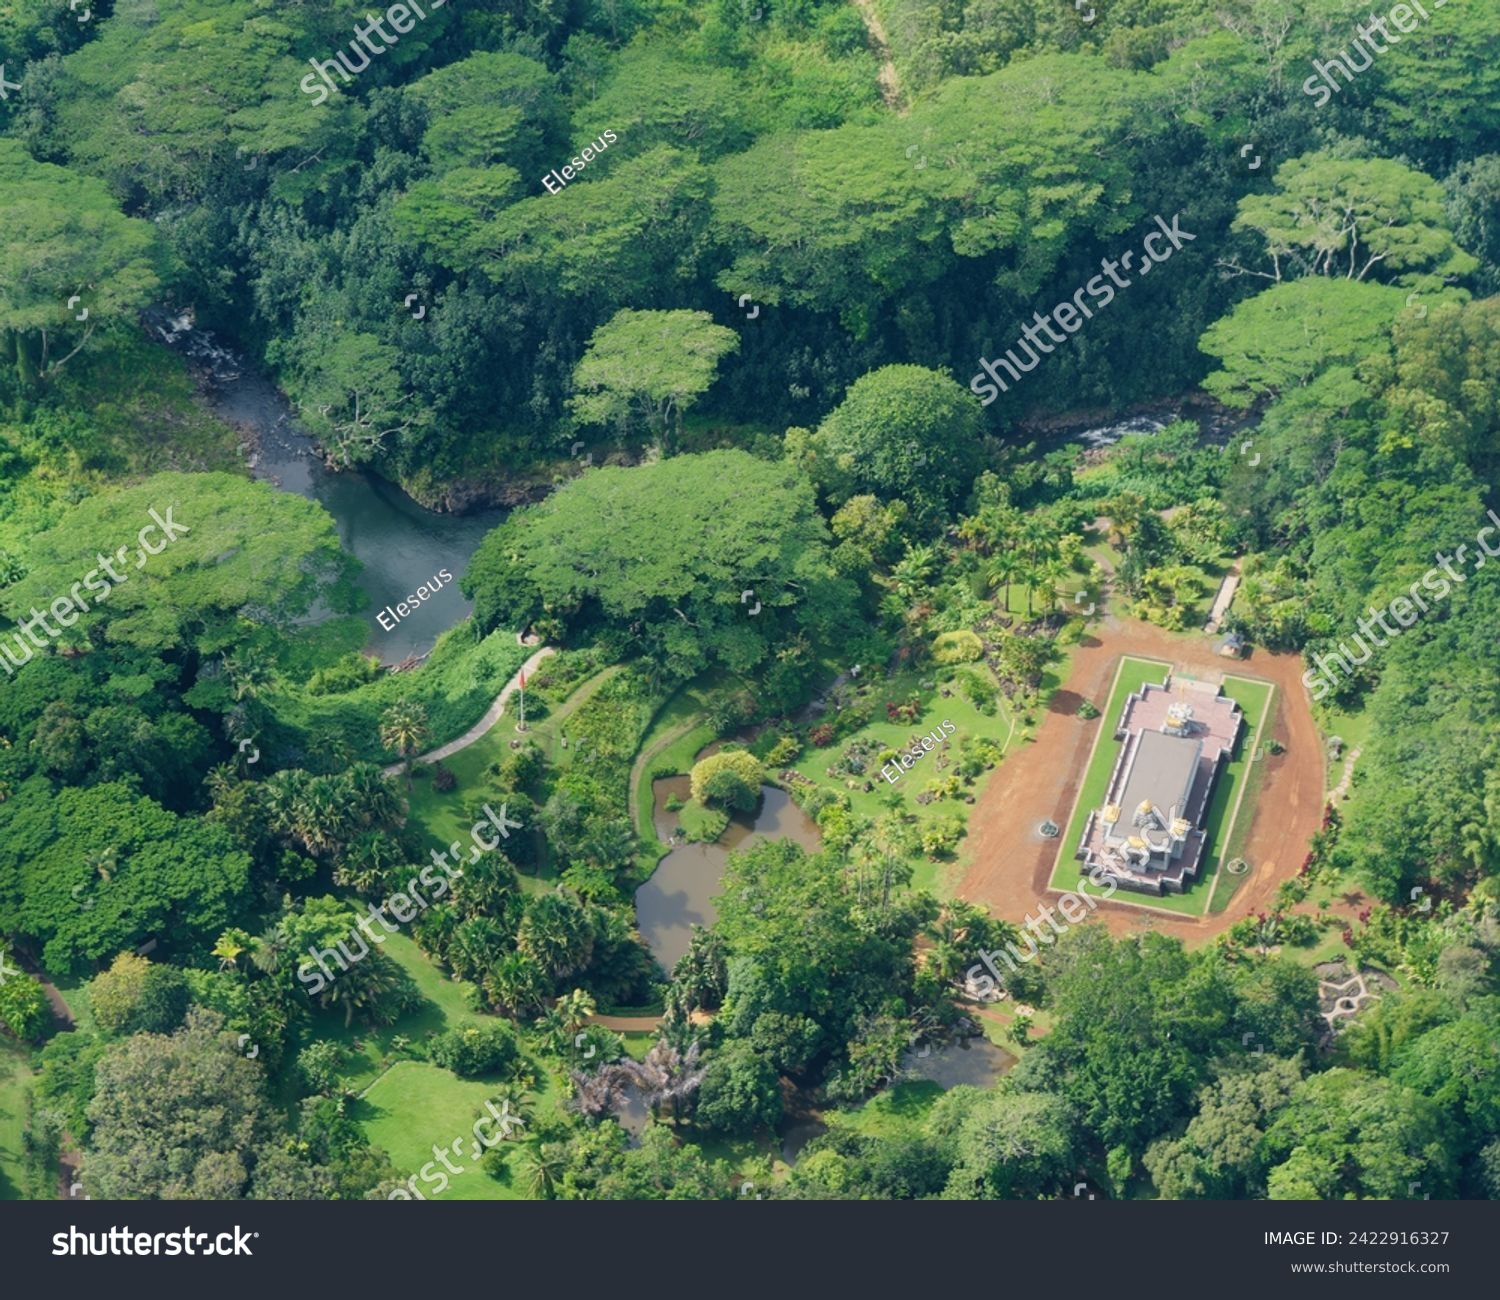 Aerial view of the Iraivan Temple at the Kauai Hindu Monastery, Island of Kauai, Hawaii #2422916327